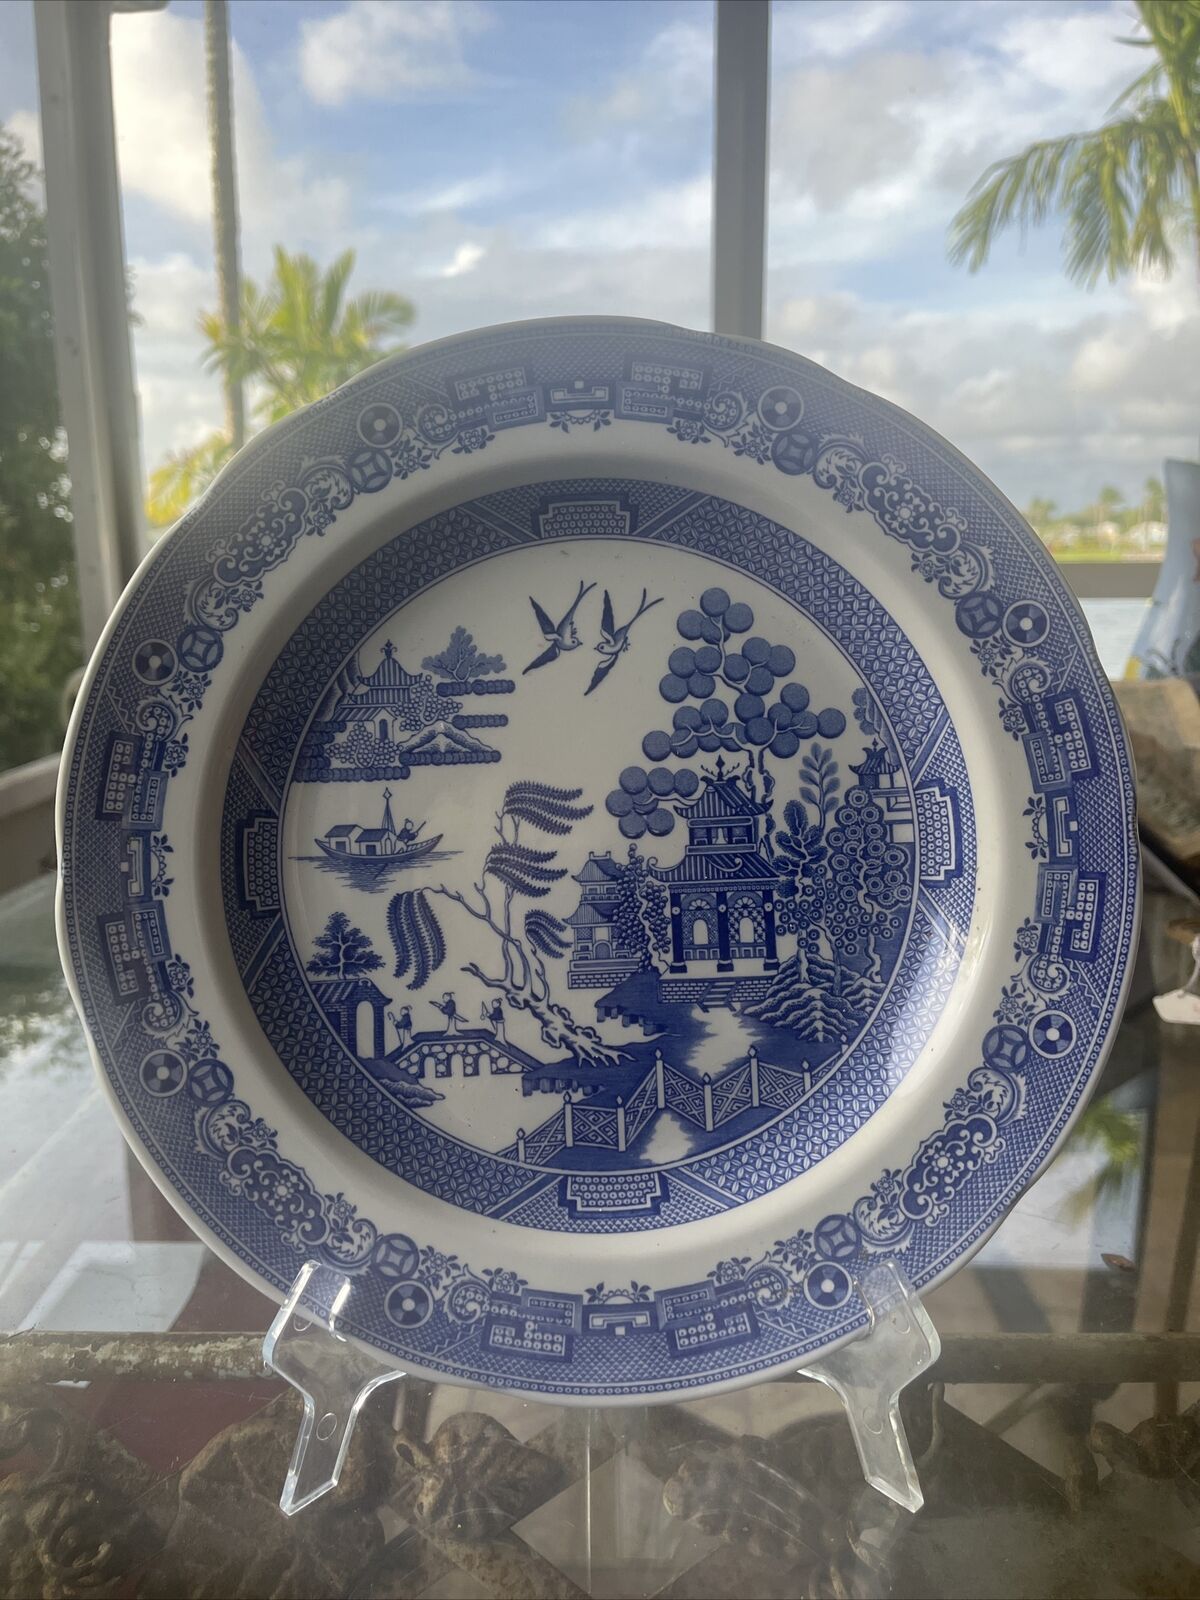 Spode Blue Room Collection 10 1/4 “Dinner Plate  porcelain transferware  Vtg Exc